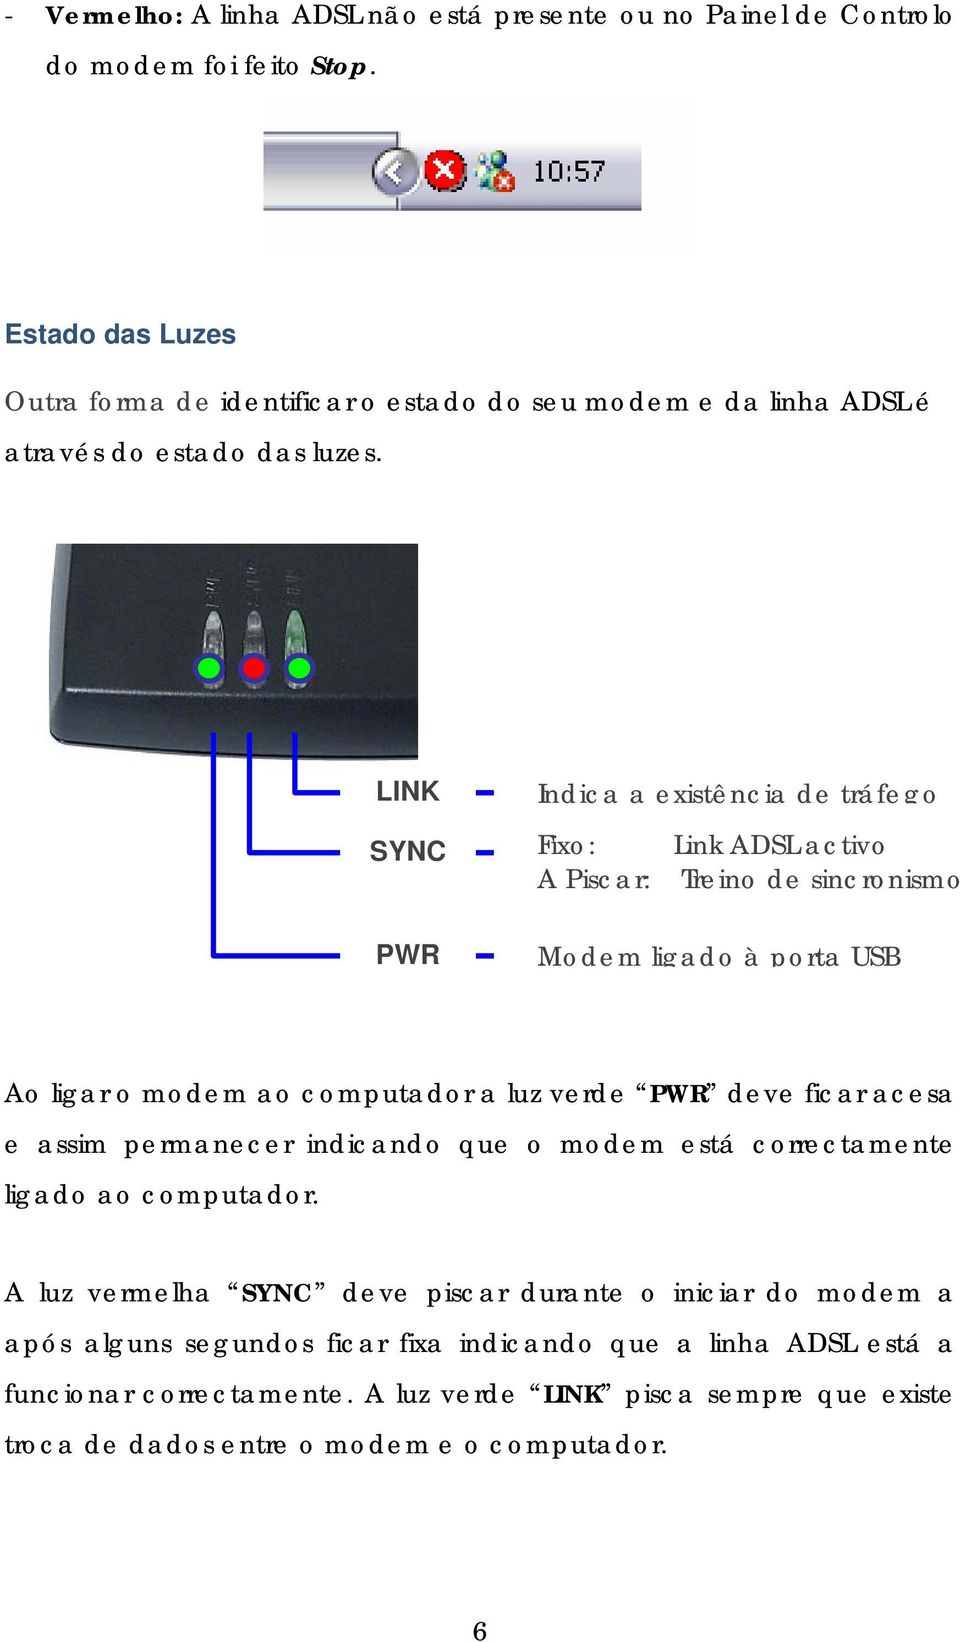 LINK SYNC PWR Indica a existência de tráfego Fixo: Link ADSL activo A Piscar: Treino de sincronismo Modem ligado à porta USB Ao ligar o modem ao computador a luz verde PWR deve